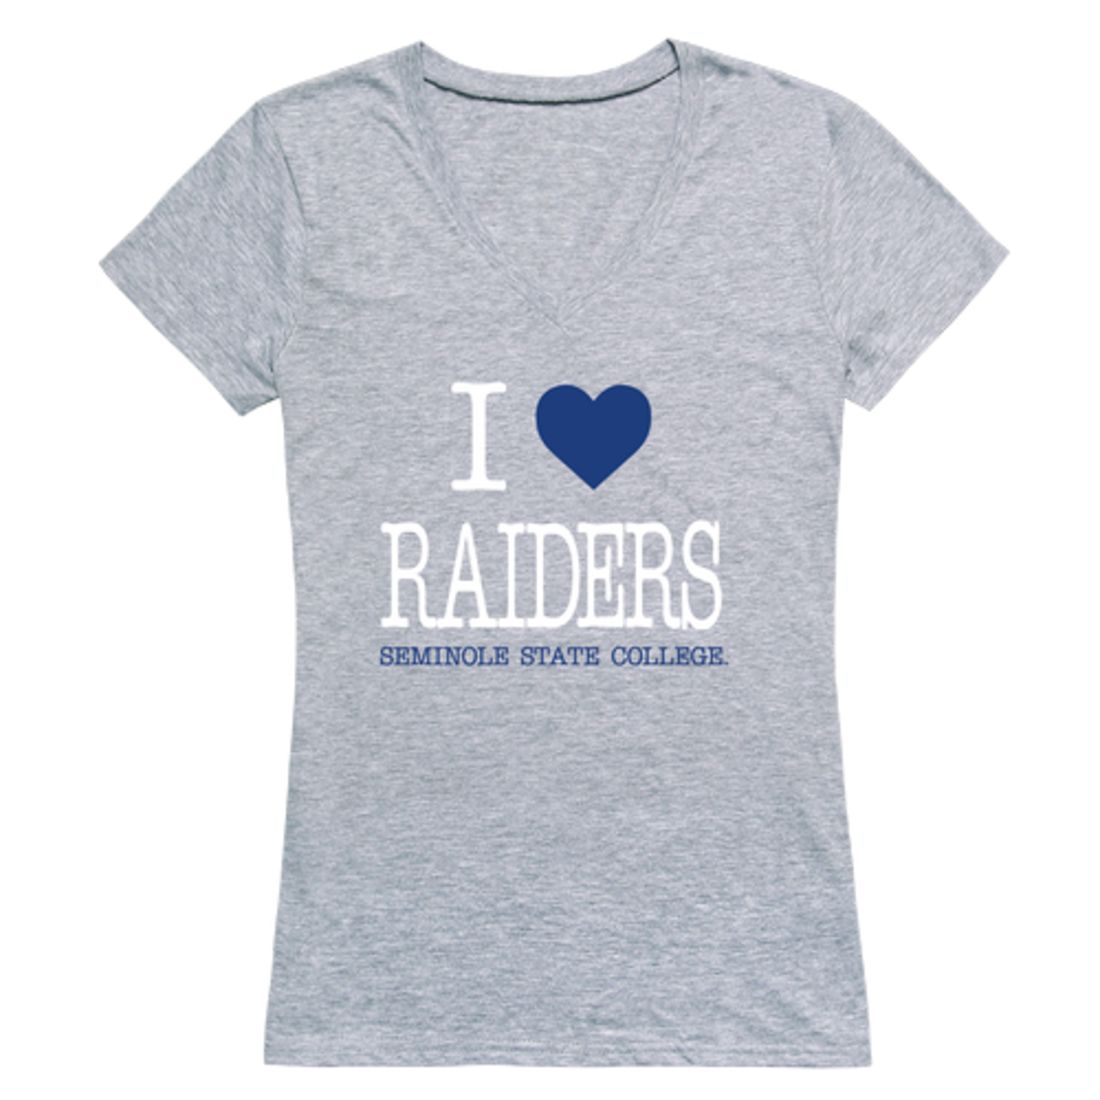 I Love Seminole State College Raiders Womens T-Shirt Tee